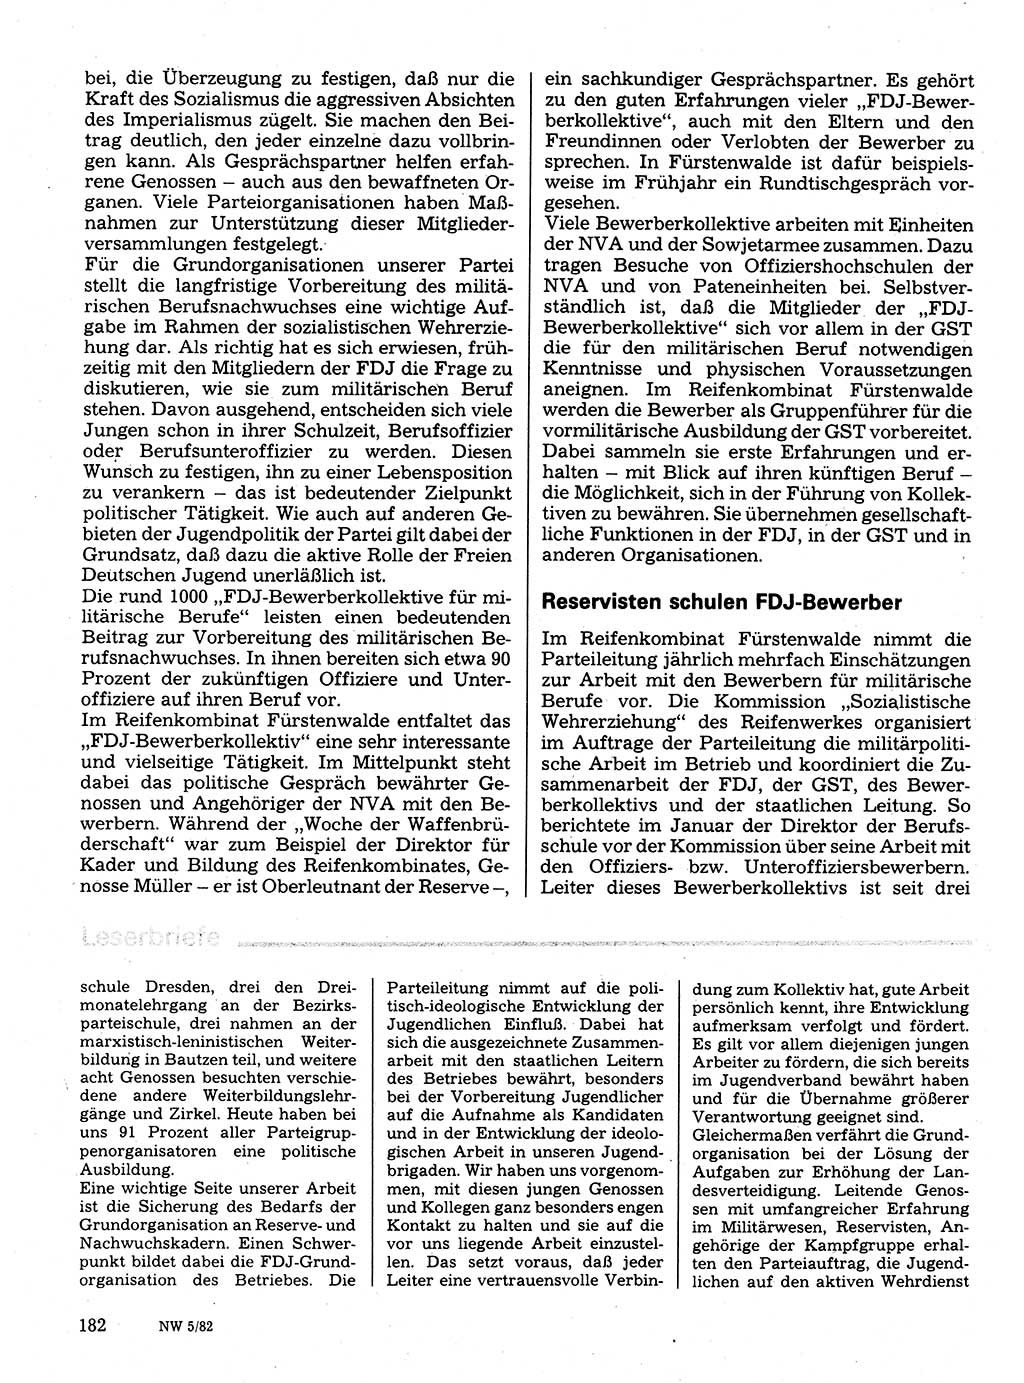 Neuer Weg (NW), Organ des Zentralkomitees (ZK) der SED (Sozialistische Einheitspartei Deutschlands) für Fragen des Parteilebens, 37. Jahrgang [Deutsche Demokratische Republik (DDR)] 1982, Seite 182 (NW ZK SED DDR 1982, S. 182)